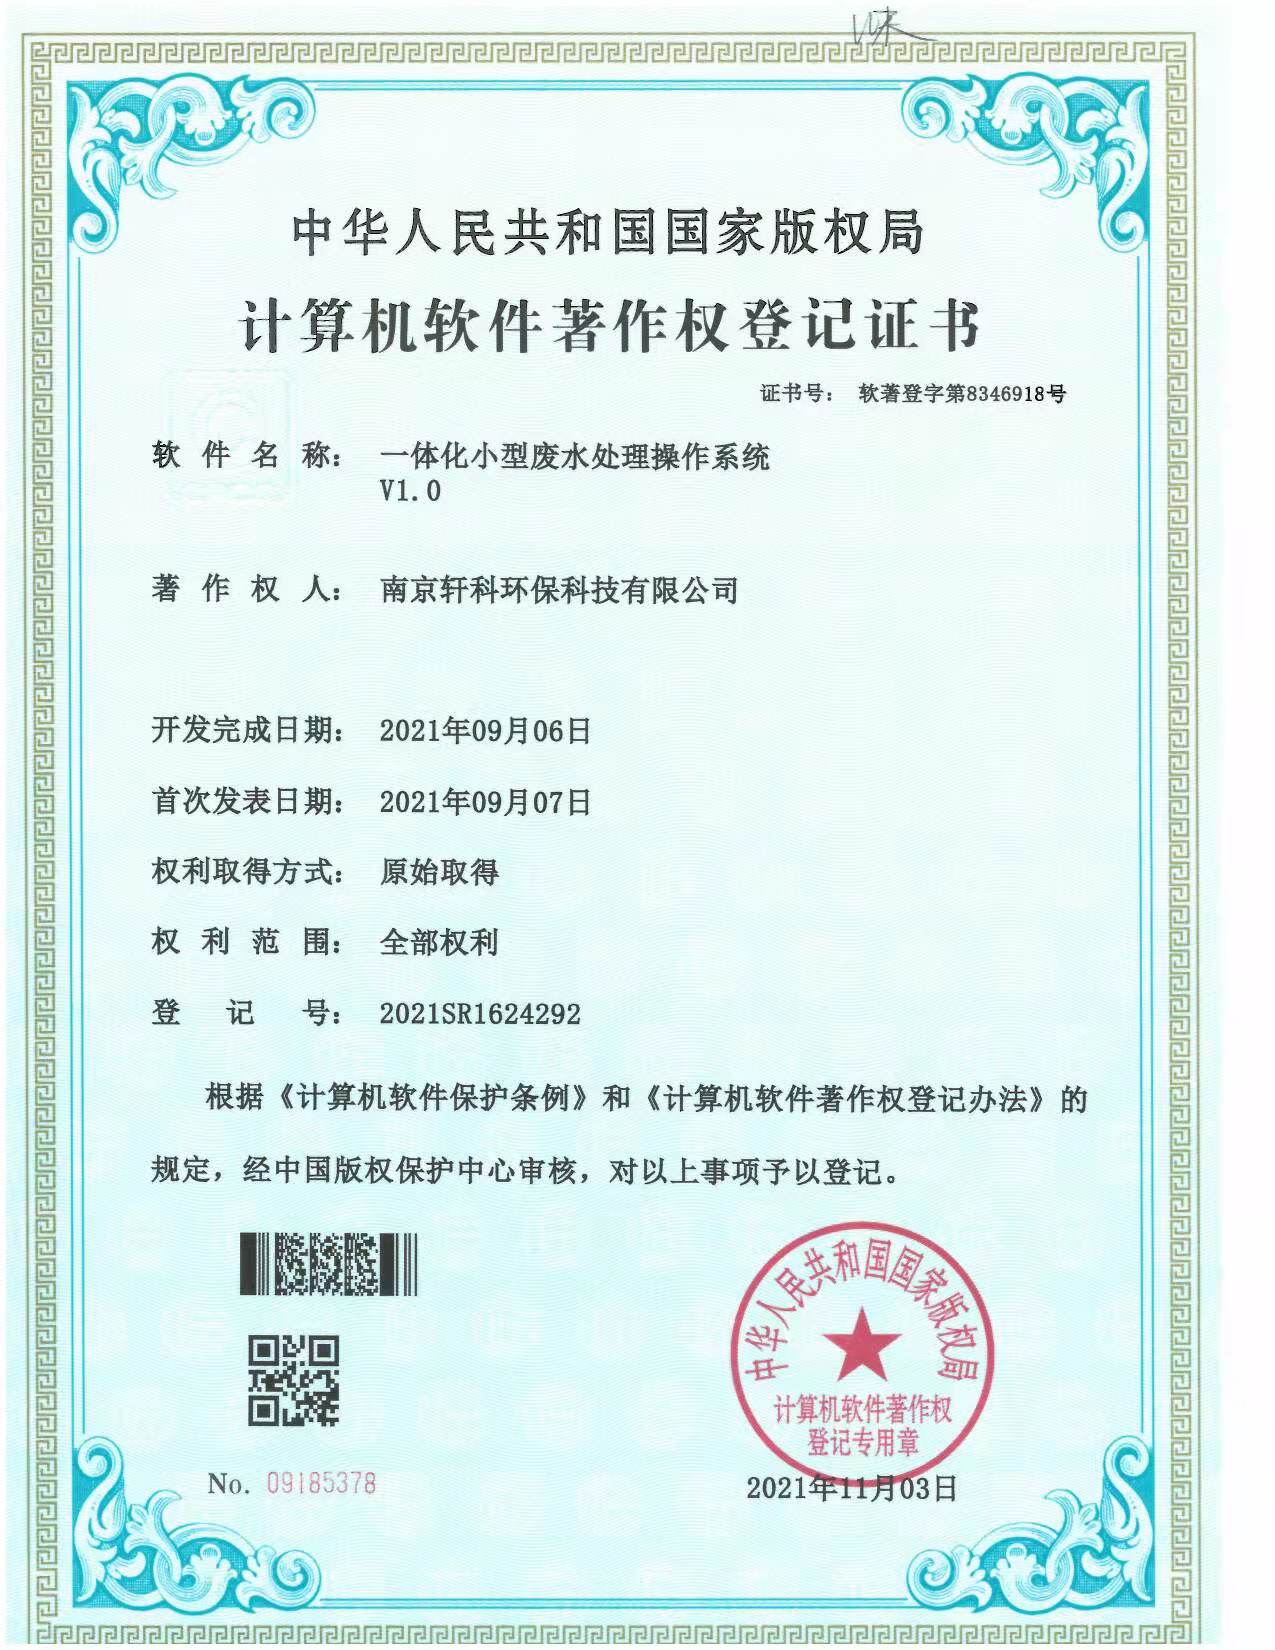 天津小型一体化废水处理系统软件著作权证书